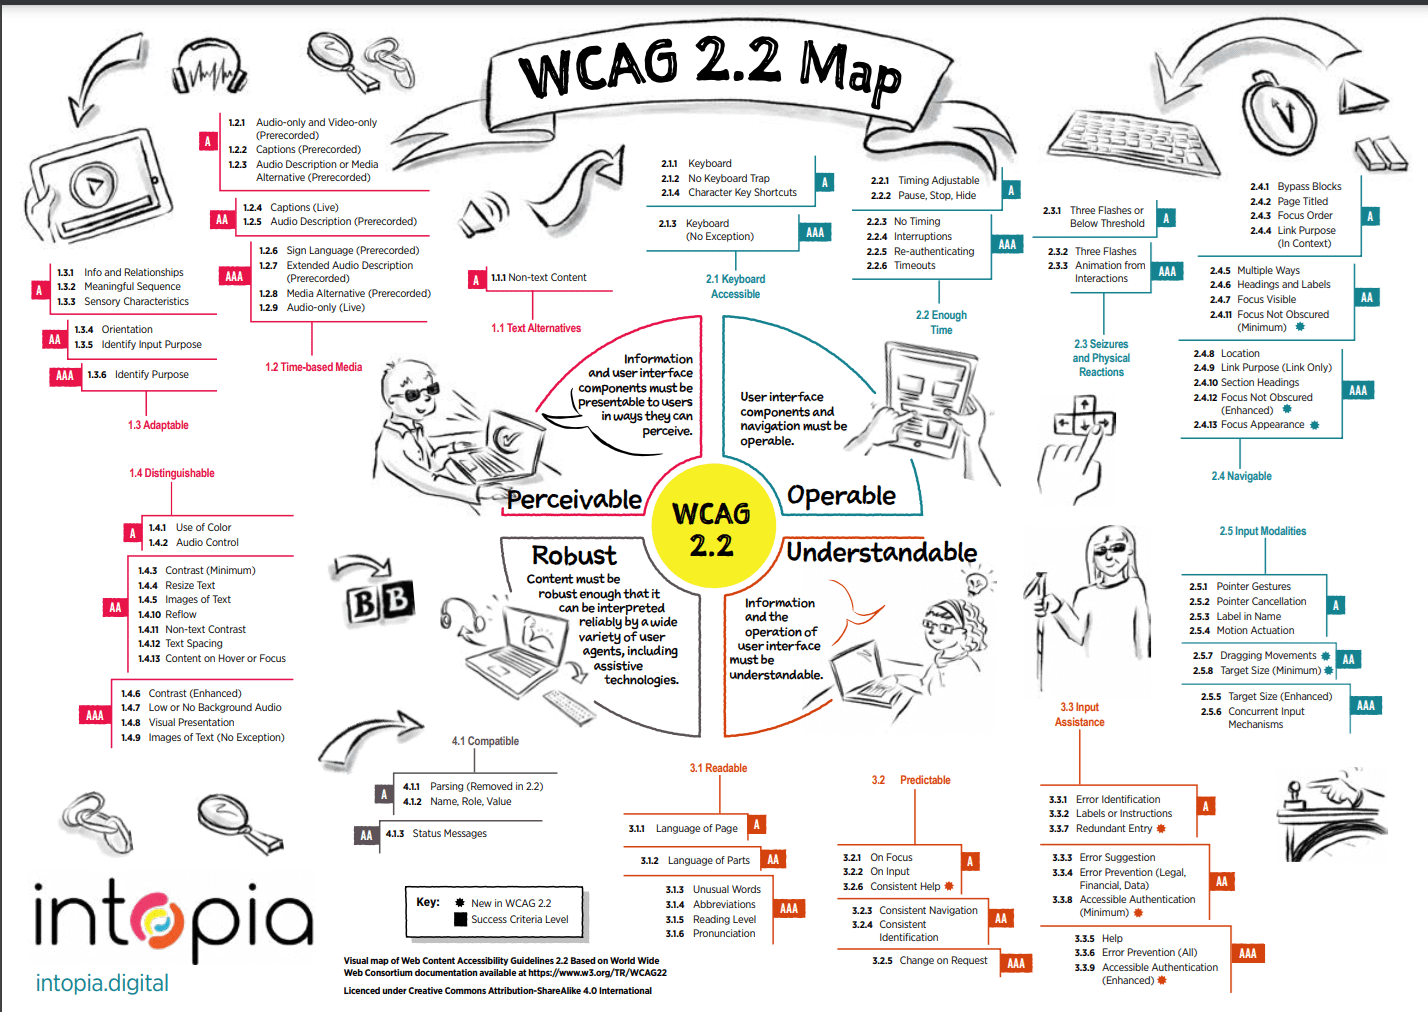 Mappa delle WCAG 2.2